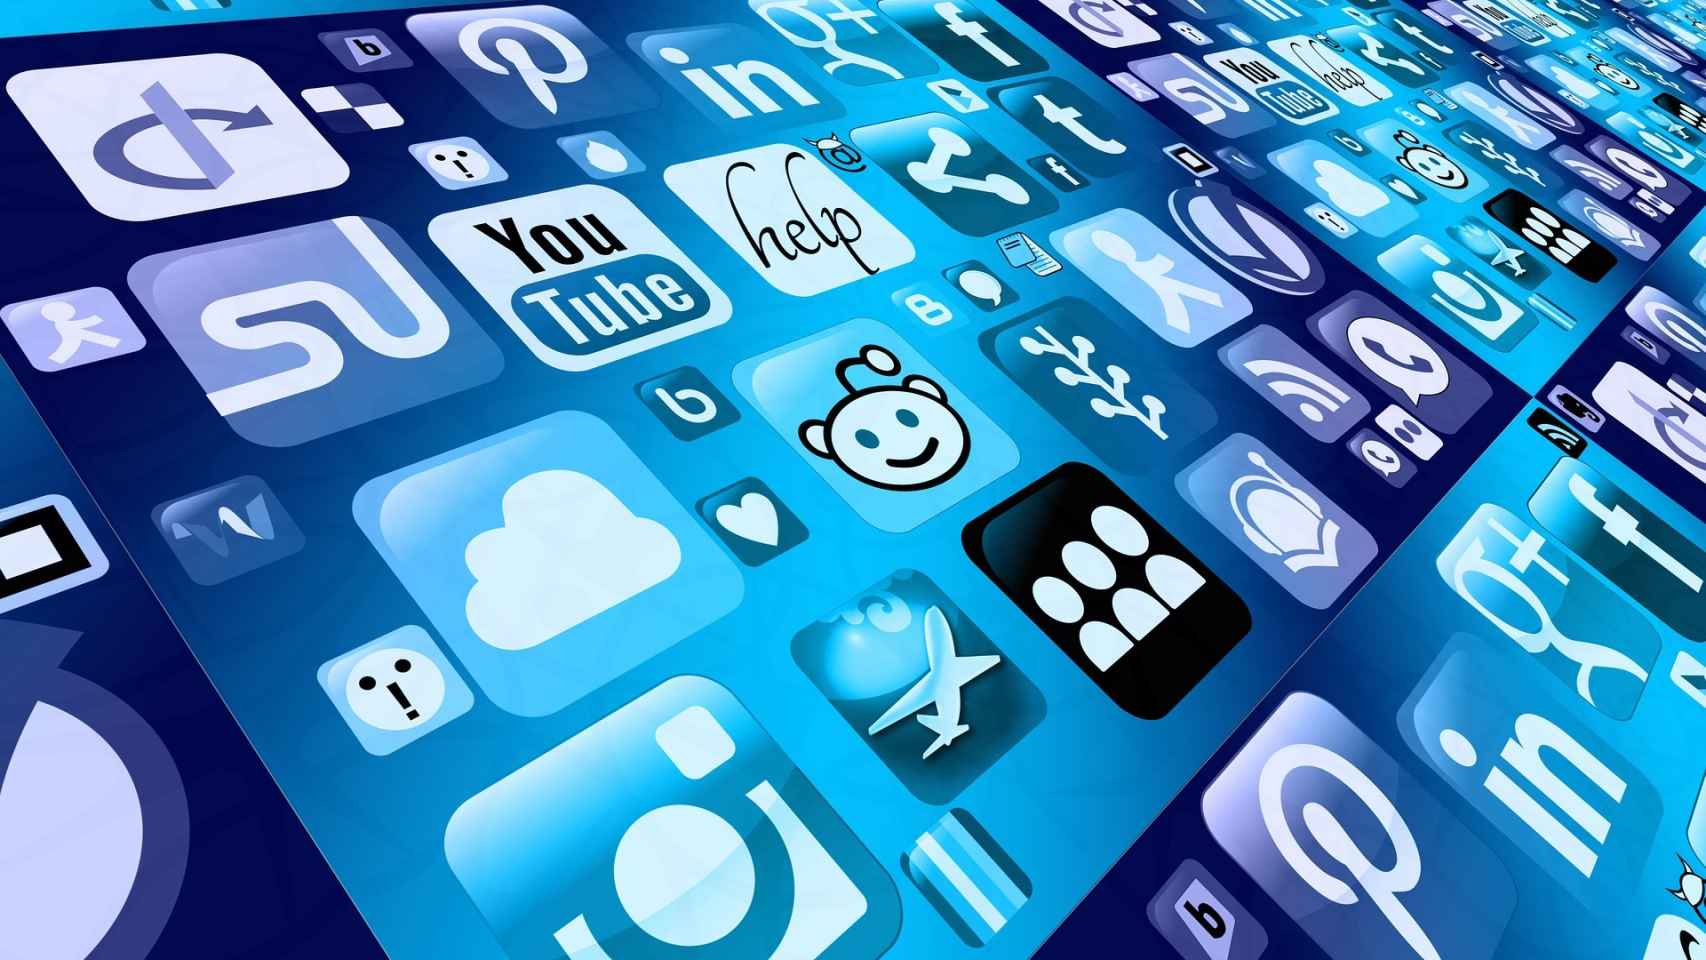 Las empresas del Ibex ante el reto de las redes sociales: publicidad o liderar la opinión pública.